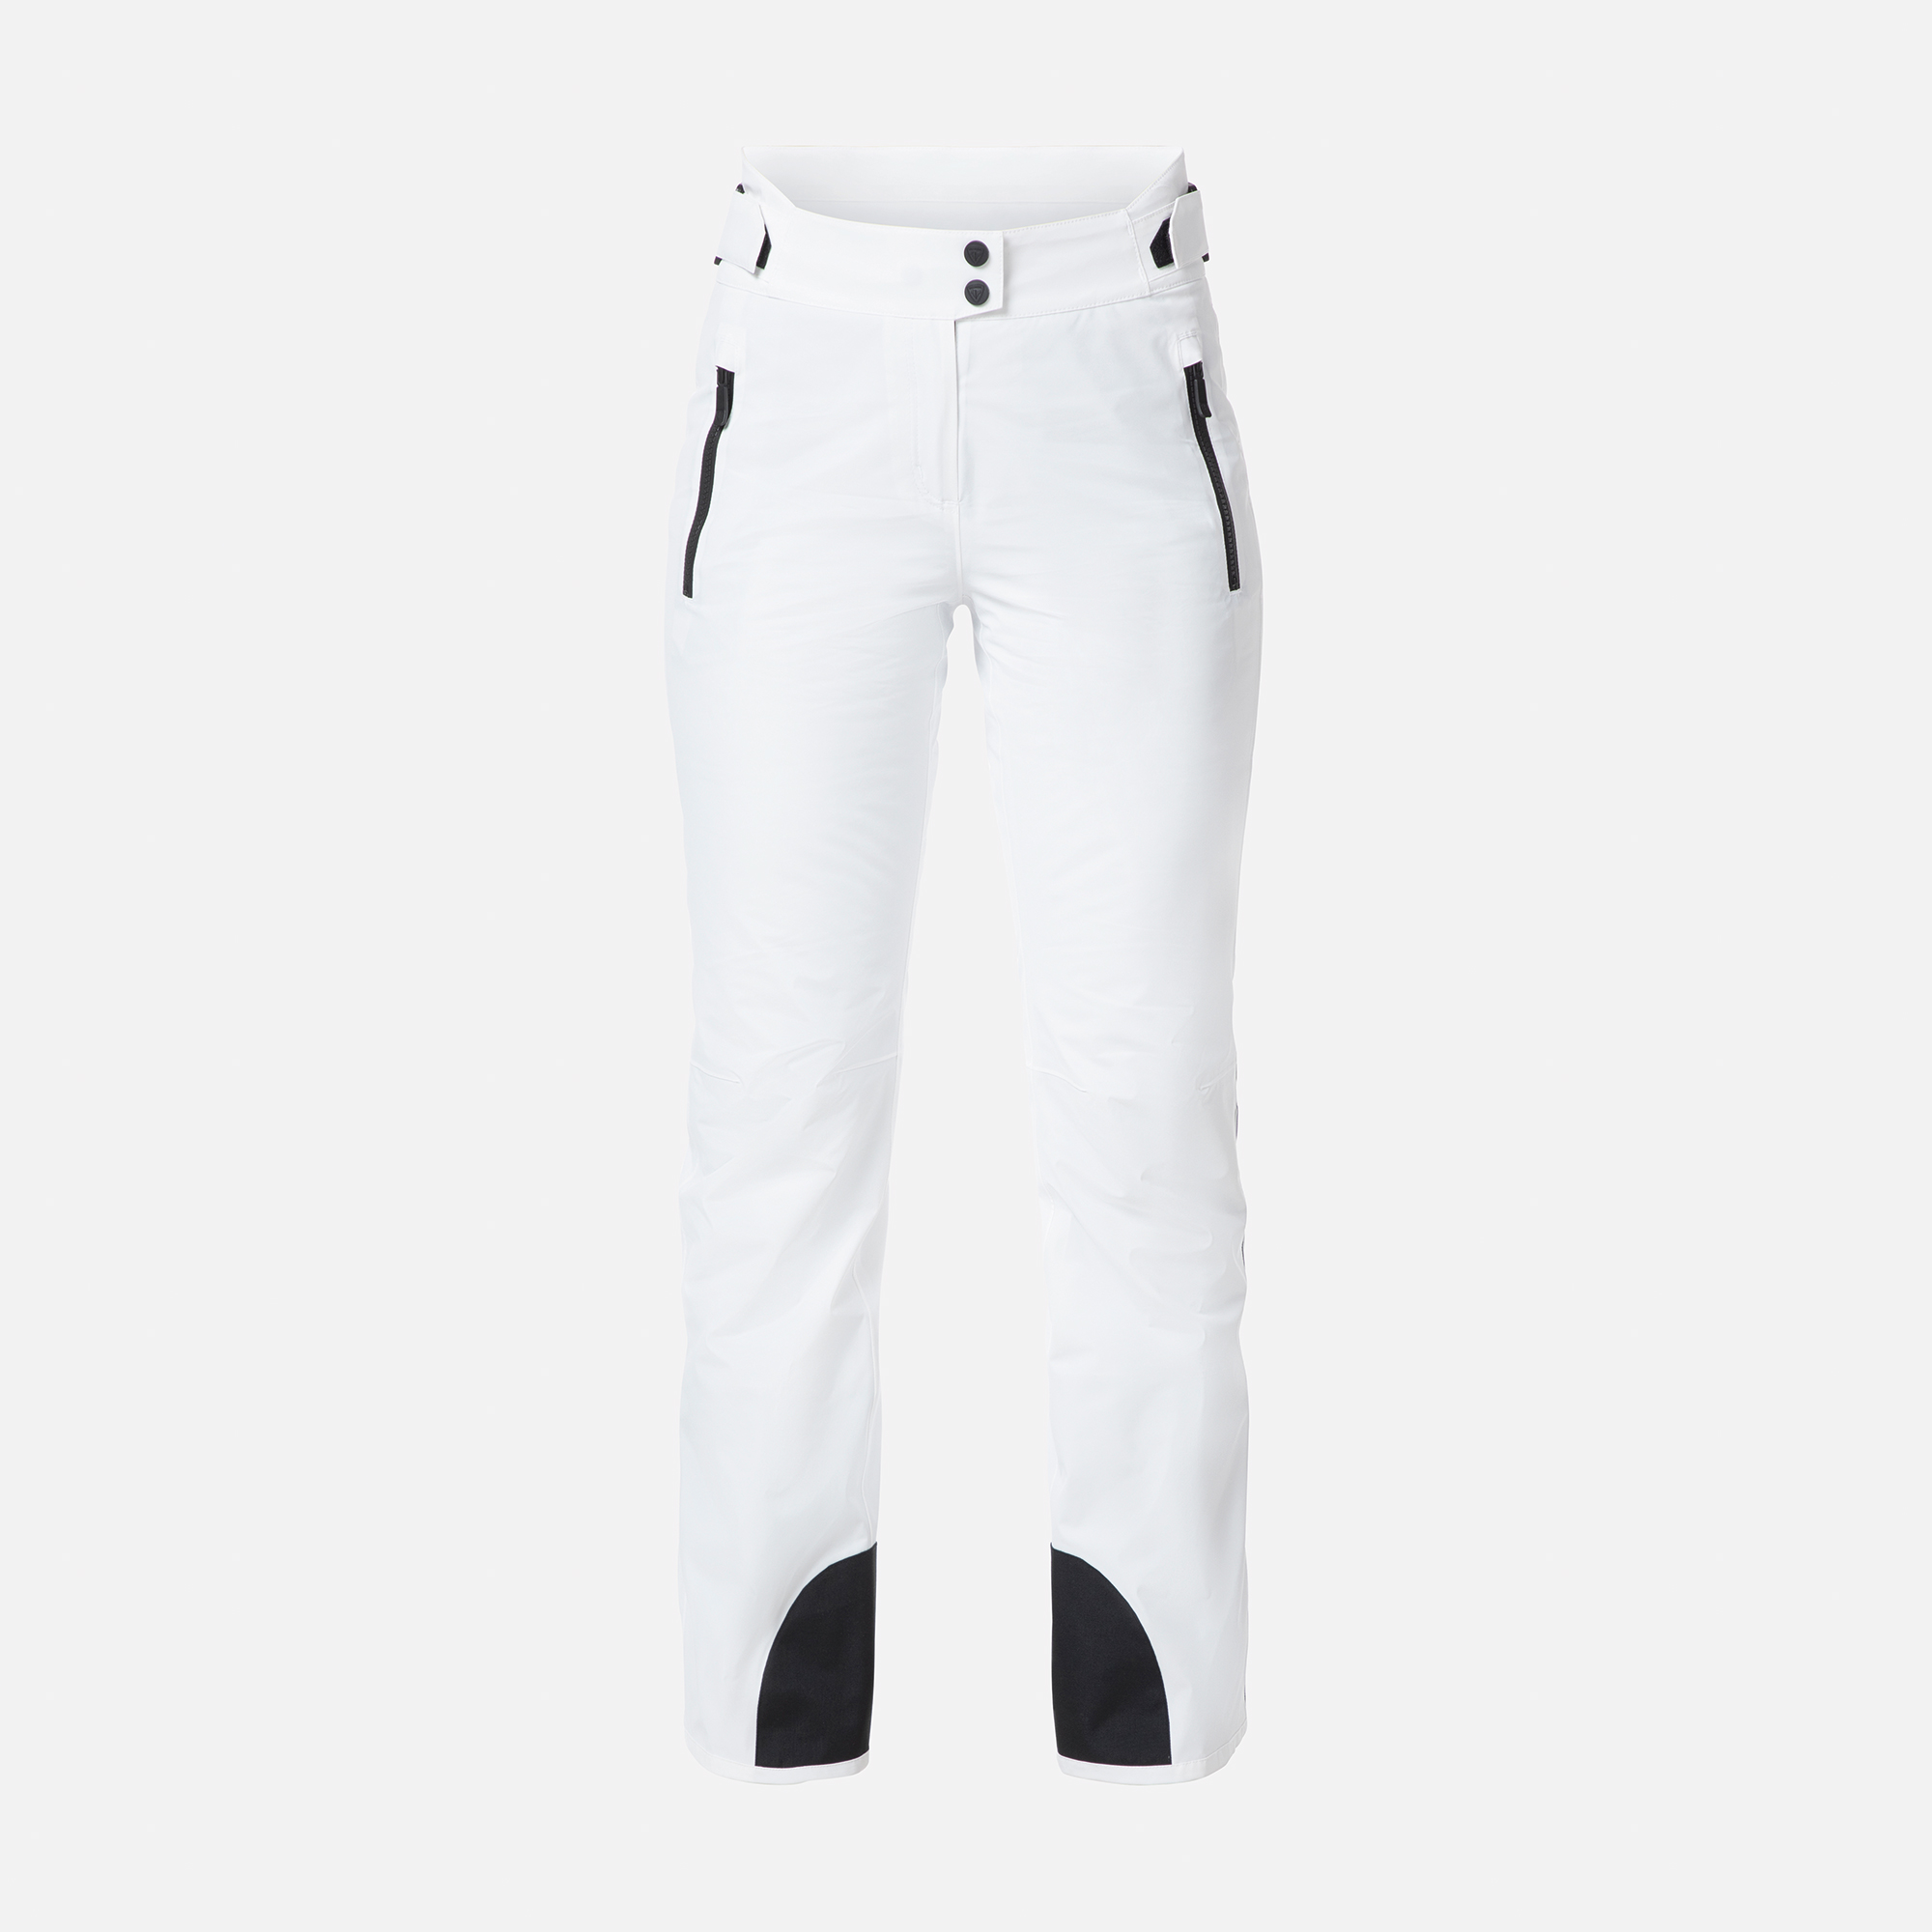 Pantalones de esquí Strato para mujer